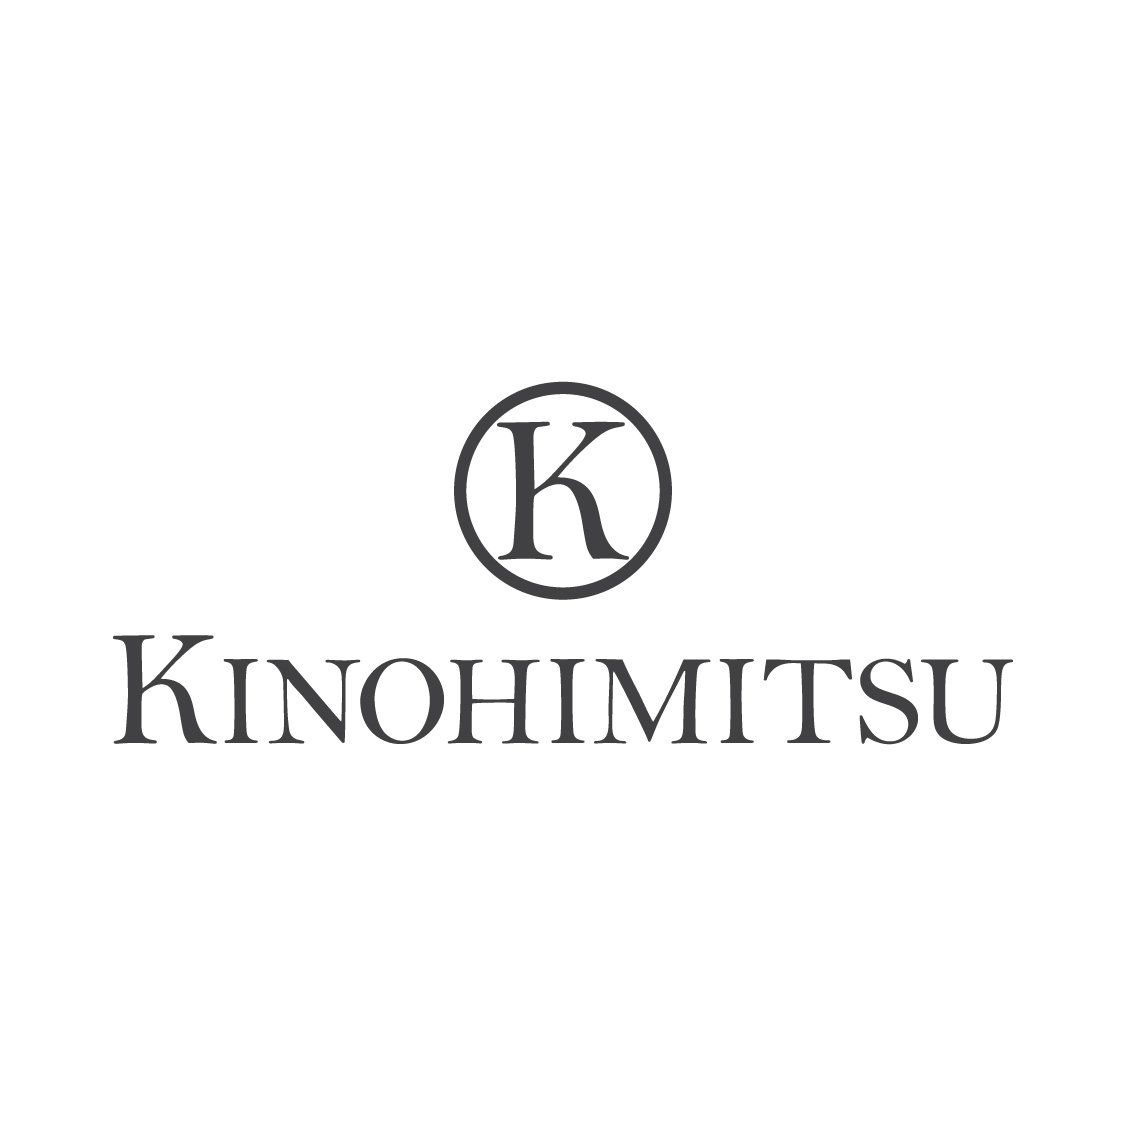 Kinohimitsu.jpg